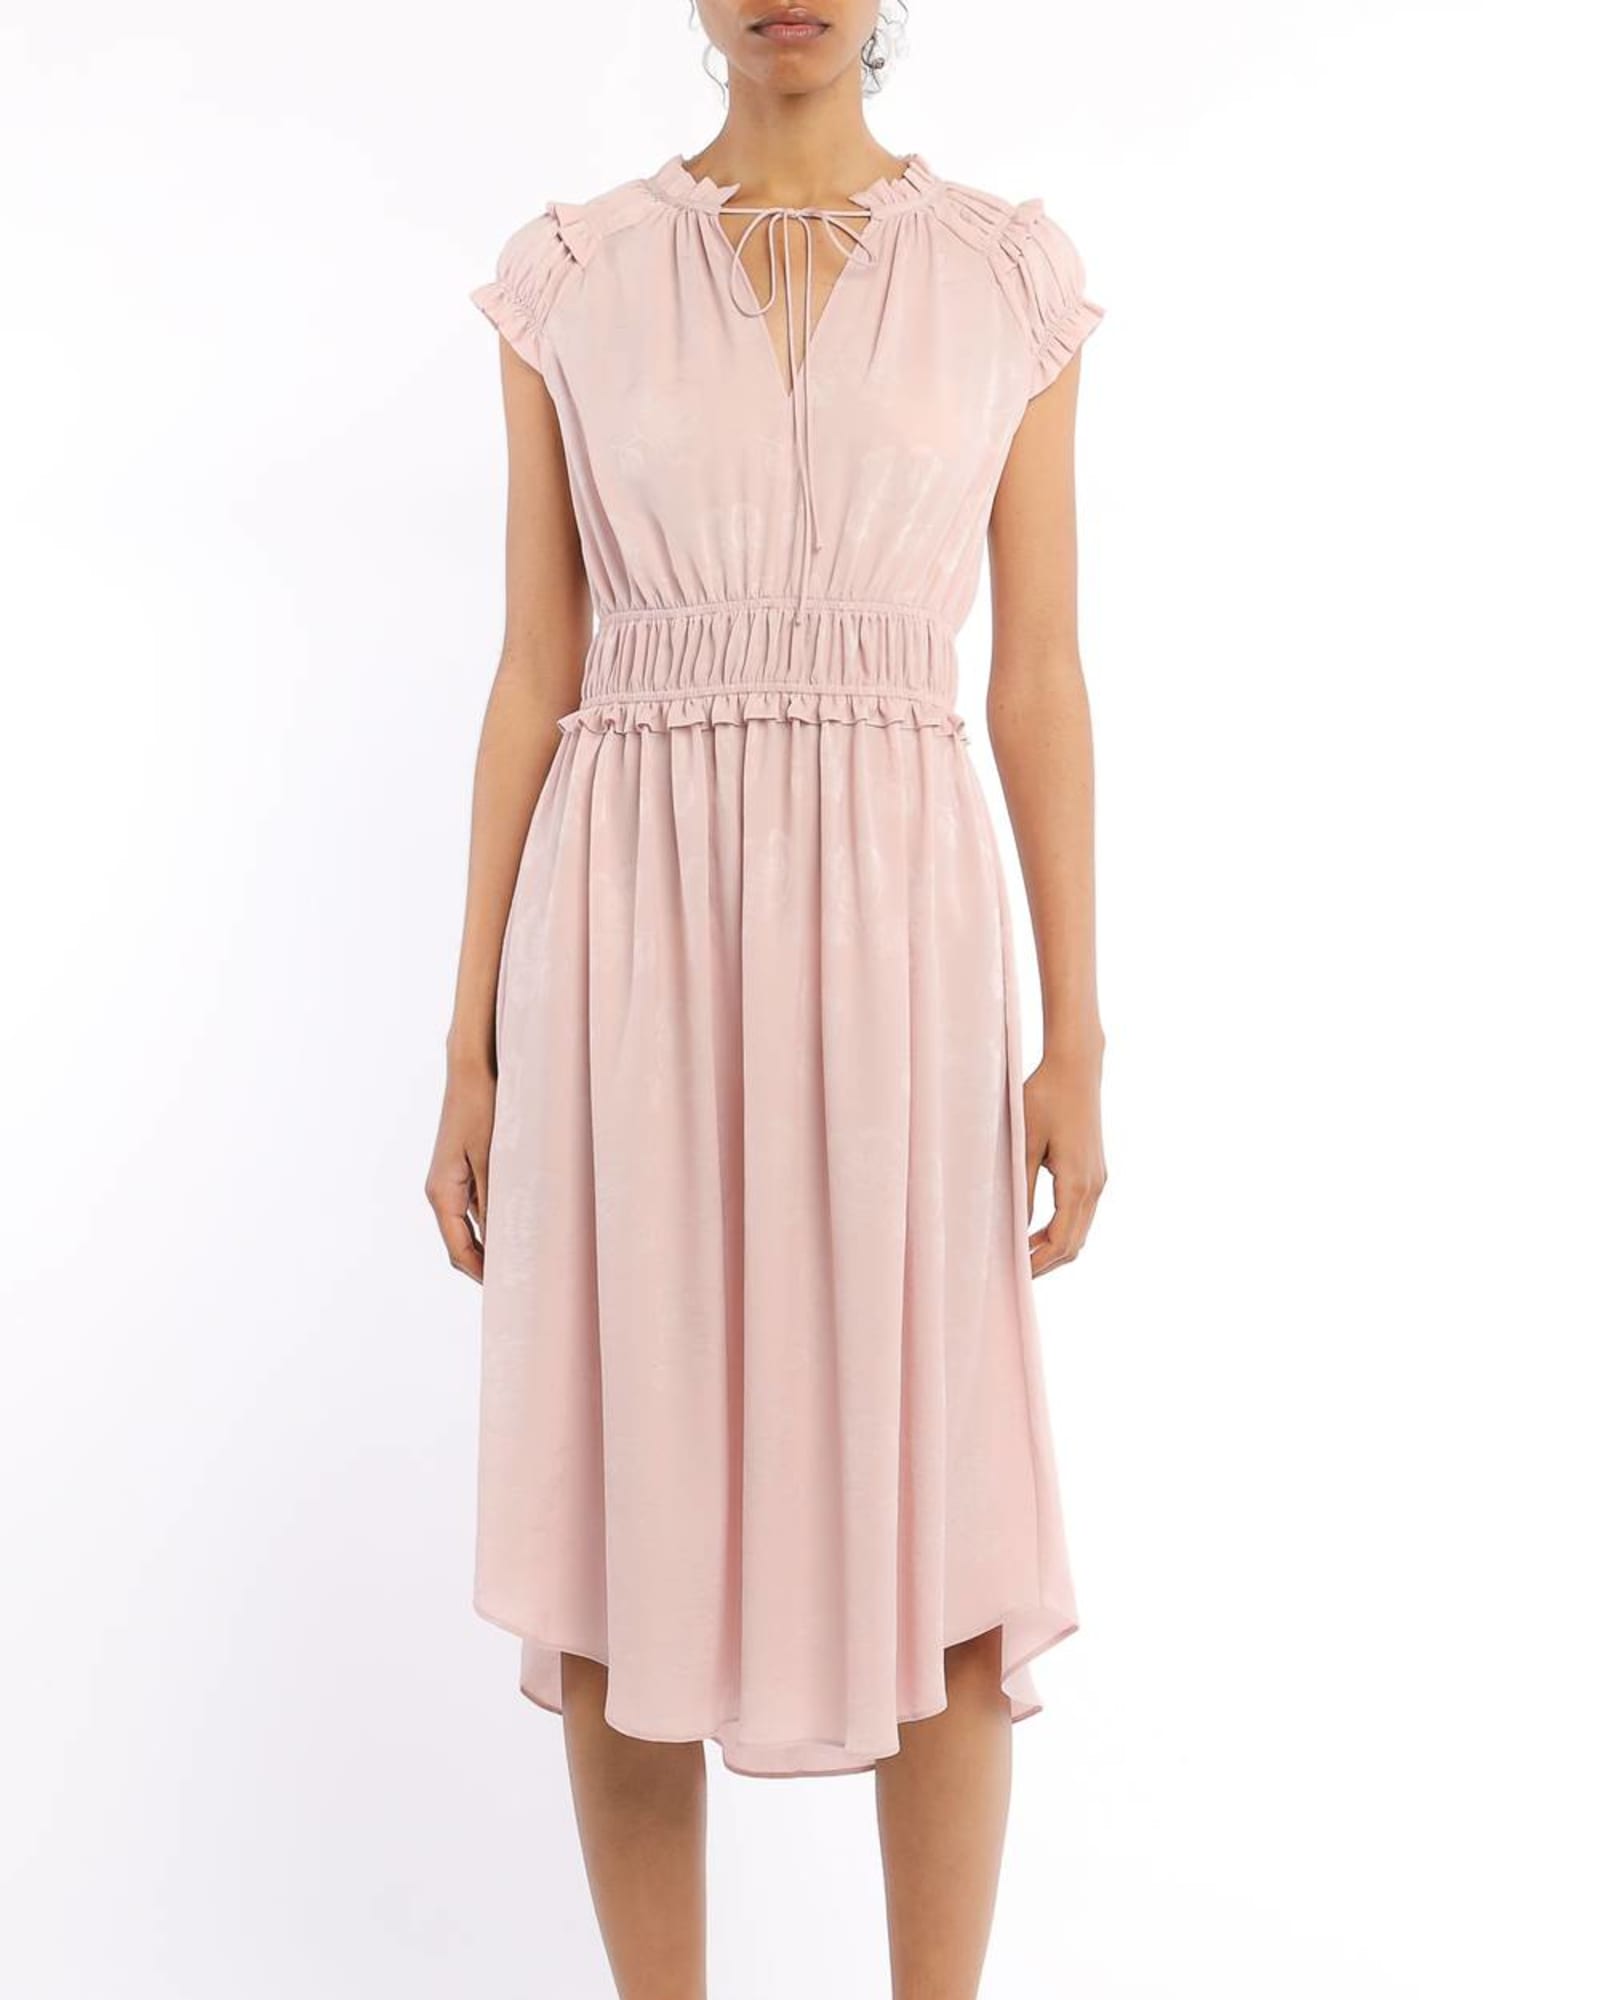 Rosette Mid Length Smocked Waist Dress in Light Pink | Light Pink